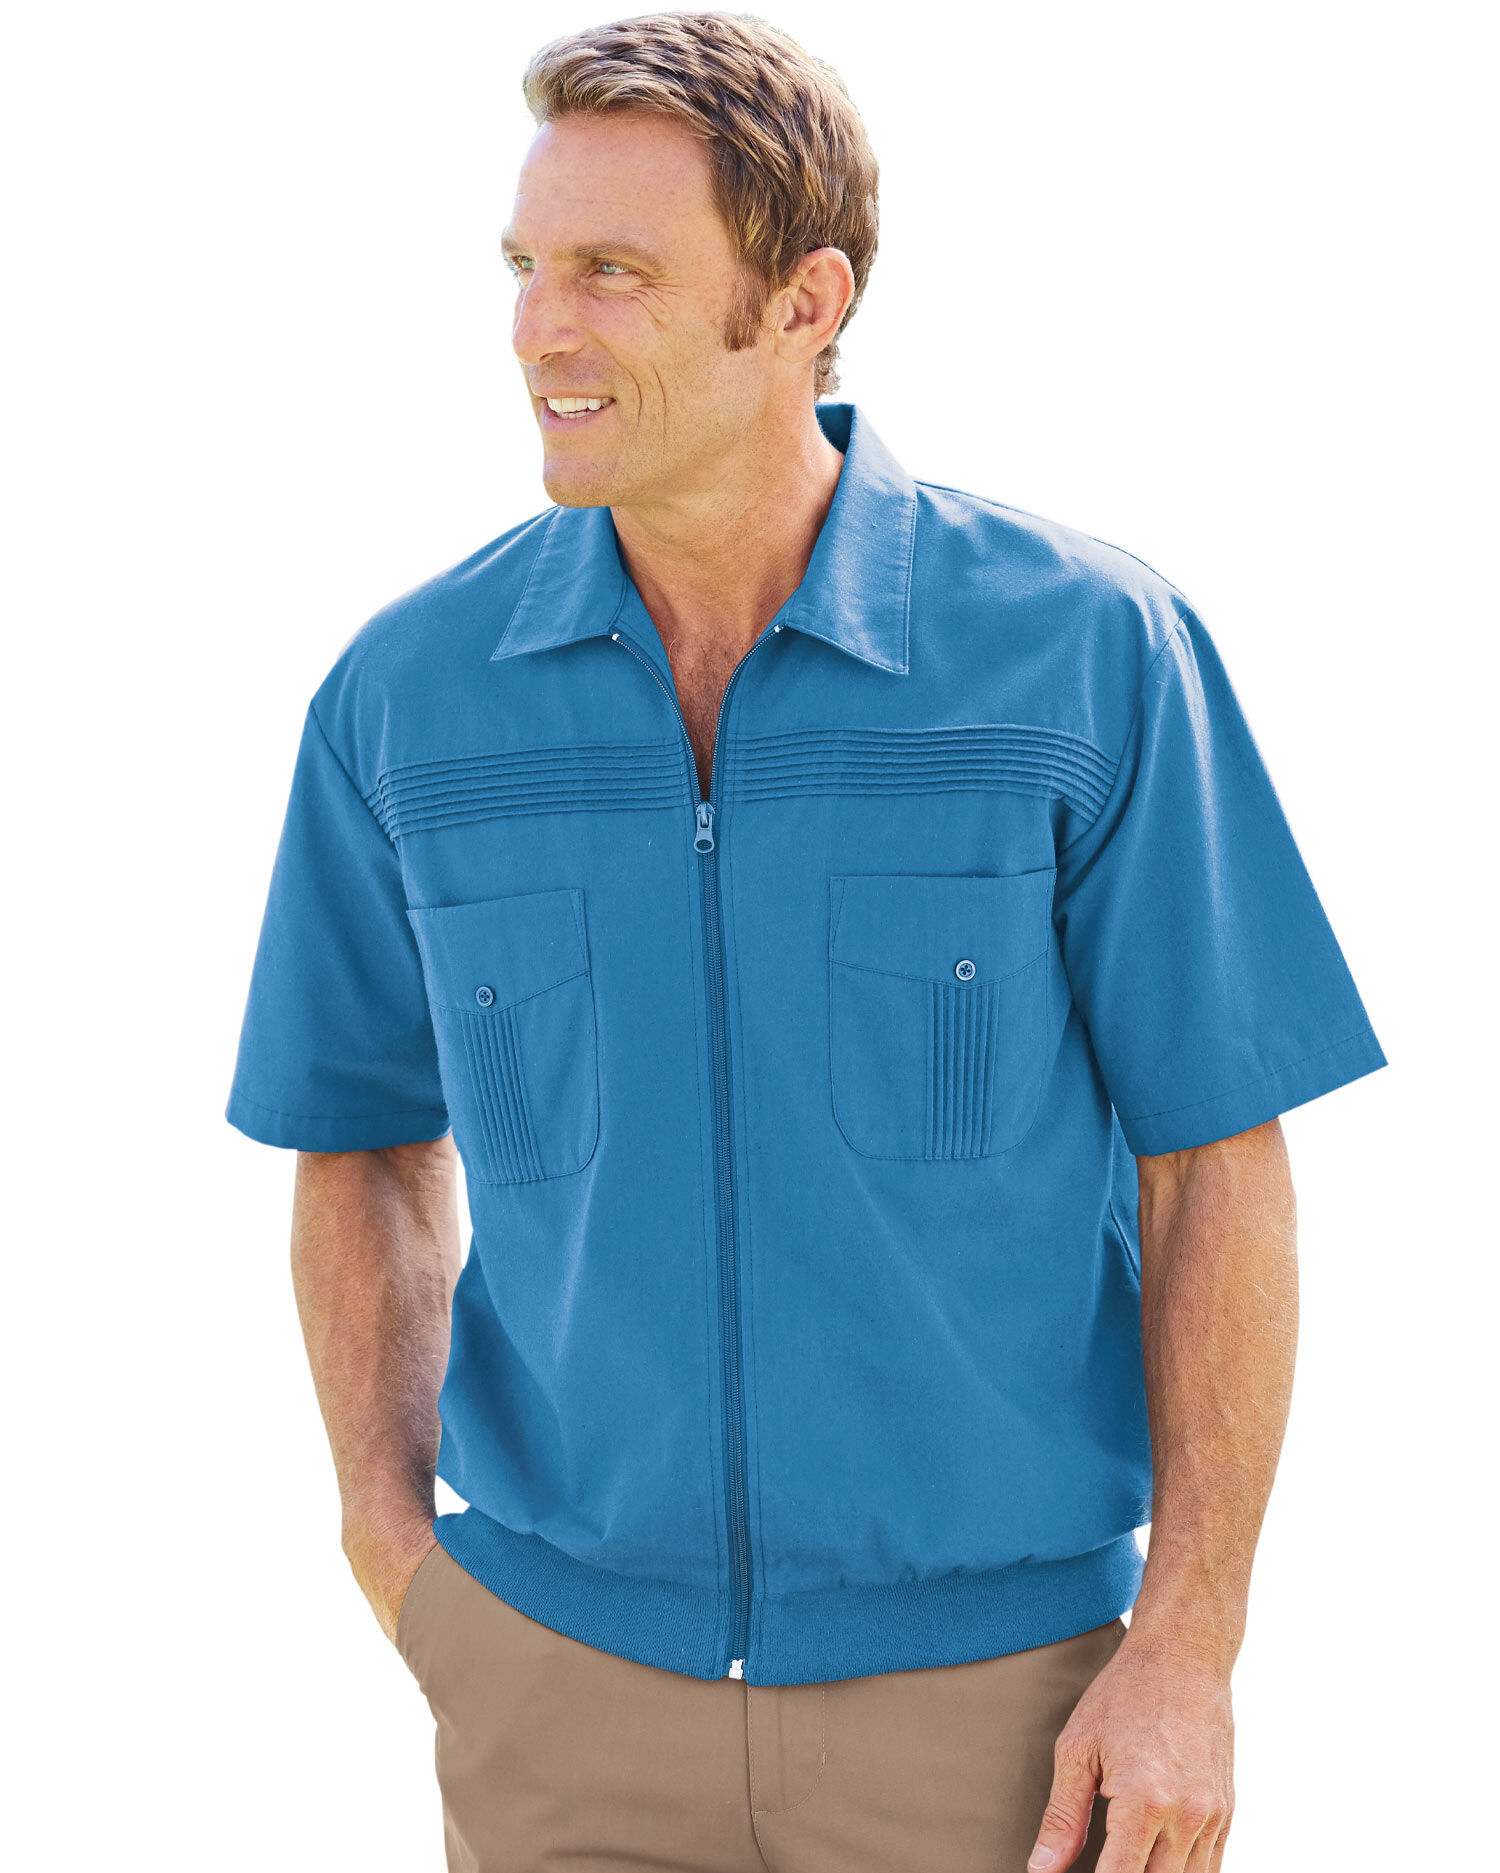 John Blair Short-Sleeve Full-Zip Shirt